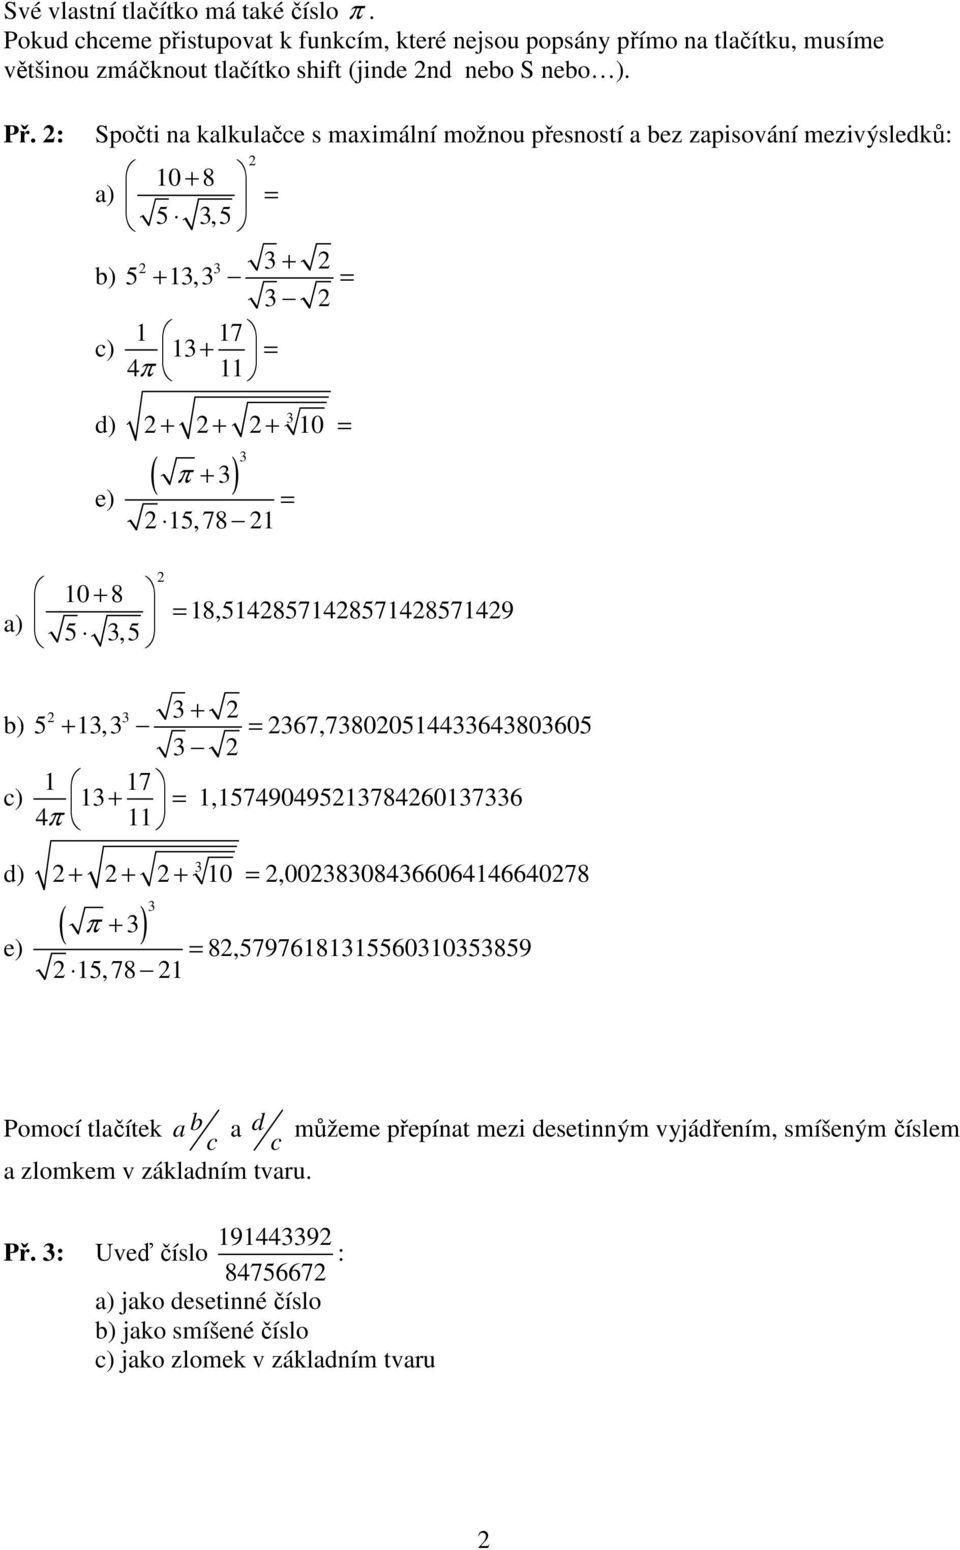 : Spočti na kalkulačce s maximální možnou přesností a bez zapisování mezivýsledků: 0 + 8 5,5 + 5 +, 7 + π d) + + + 0 ( π + ) 5,78 0 + 8 5,5 8,58578578579 d) +